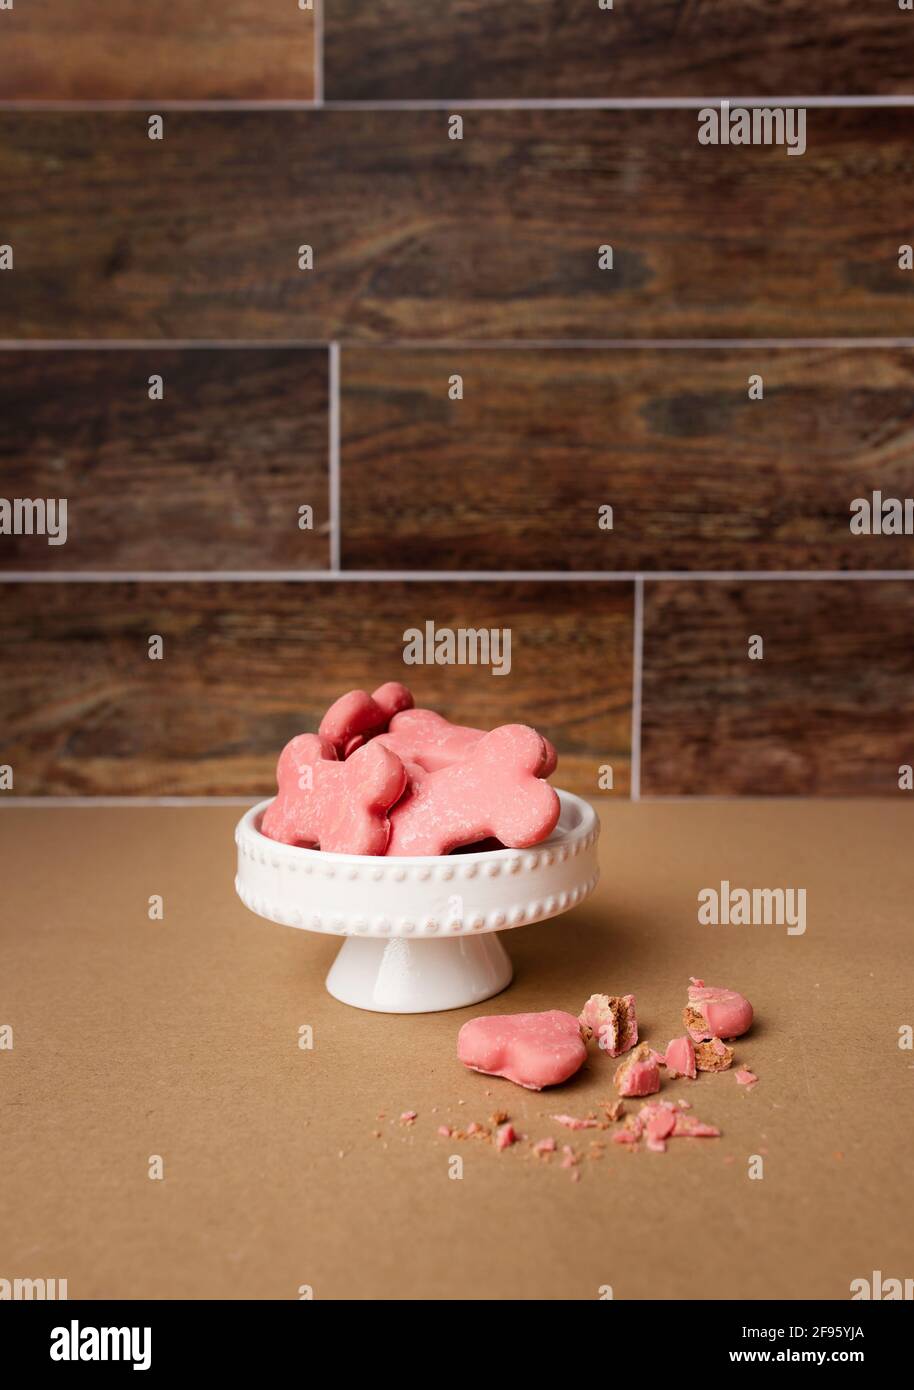 El perro rosa trata sobre el blanco mini pastel de pie contra marrón fondo de madera Foto de stock